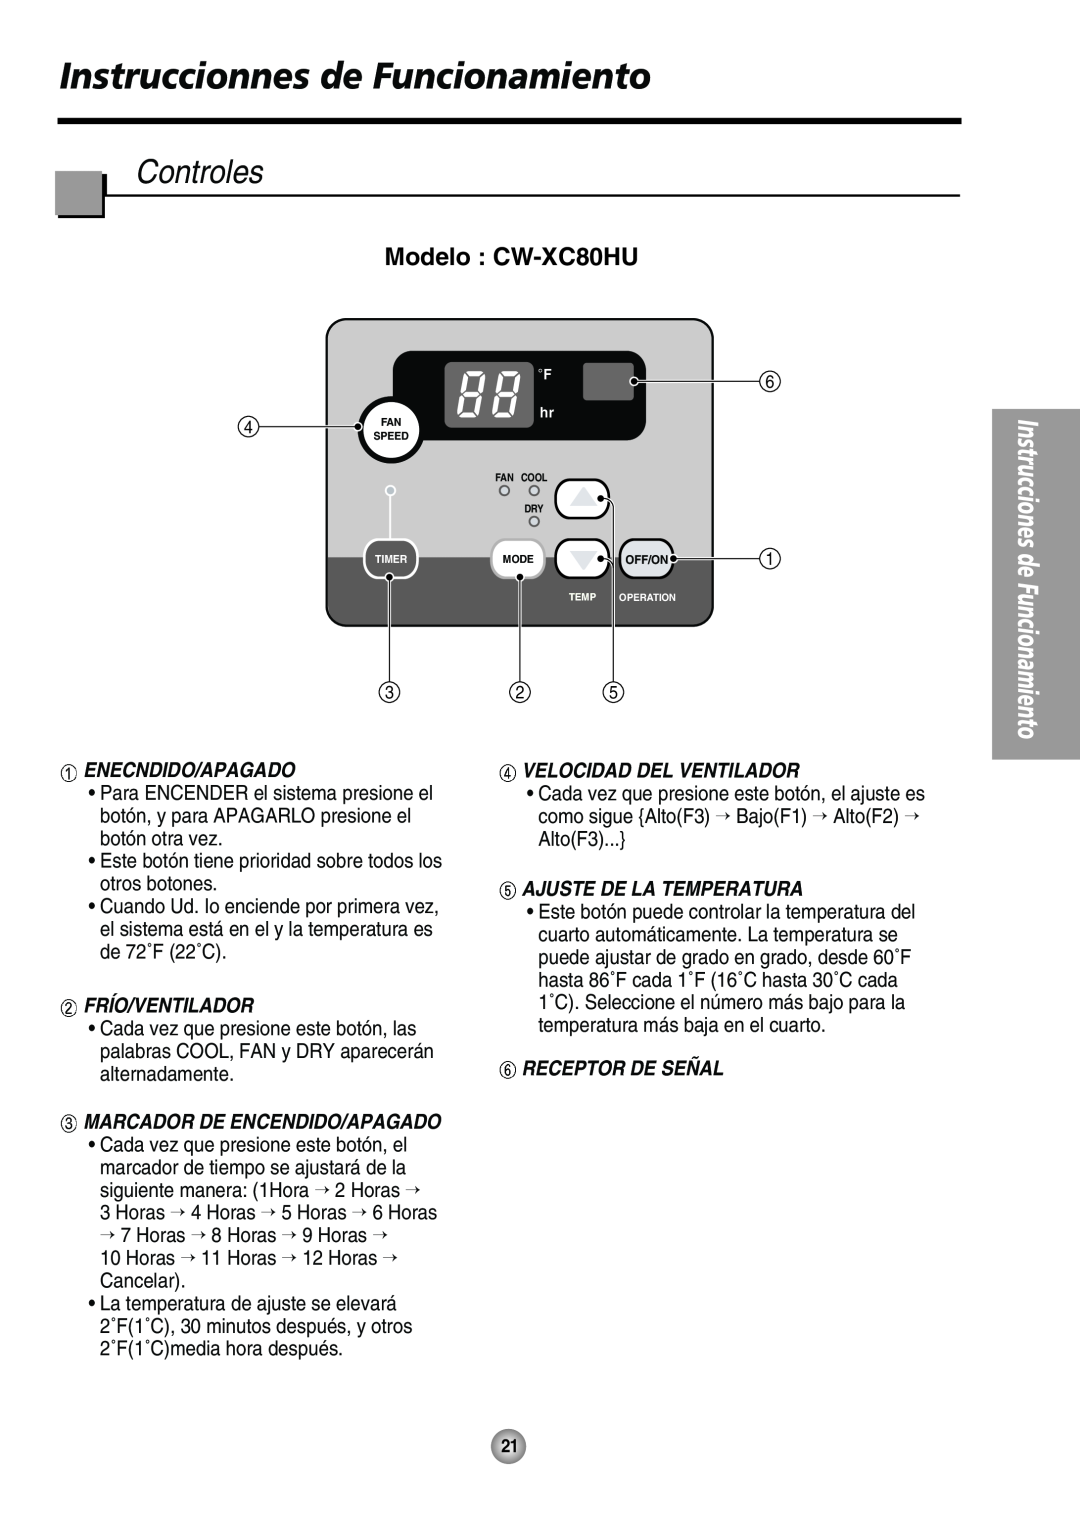 Panasonic manual Instruccionnes de Funcionamiento, Controles, Modelo CW-XC80HU, Enecndido/Apagado, Frío/Ventilador 